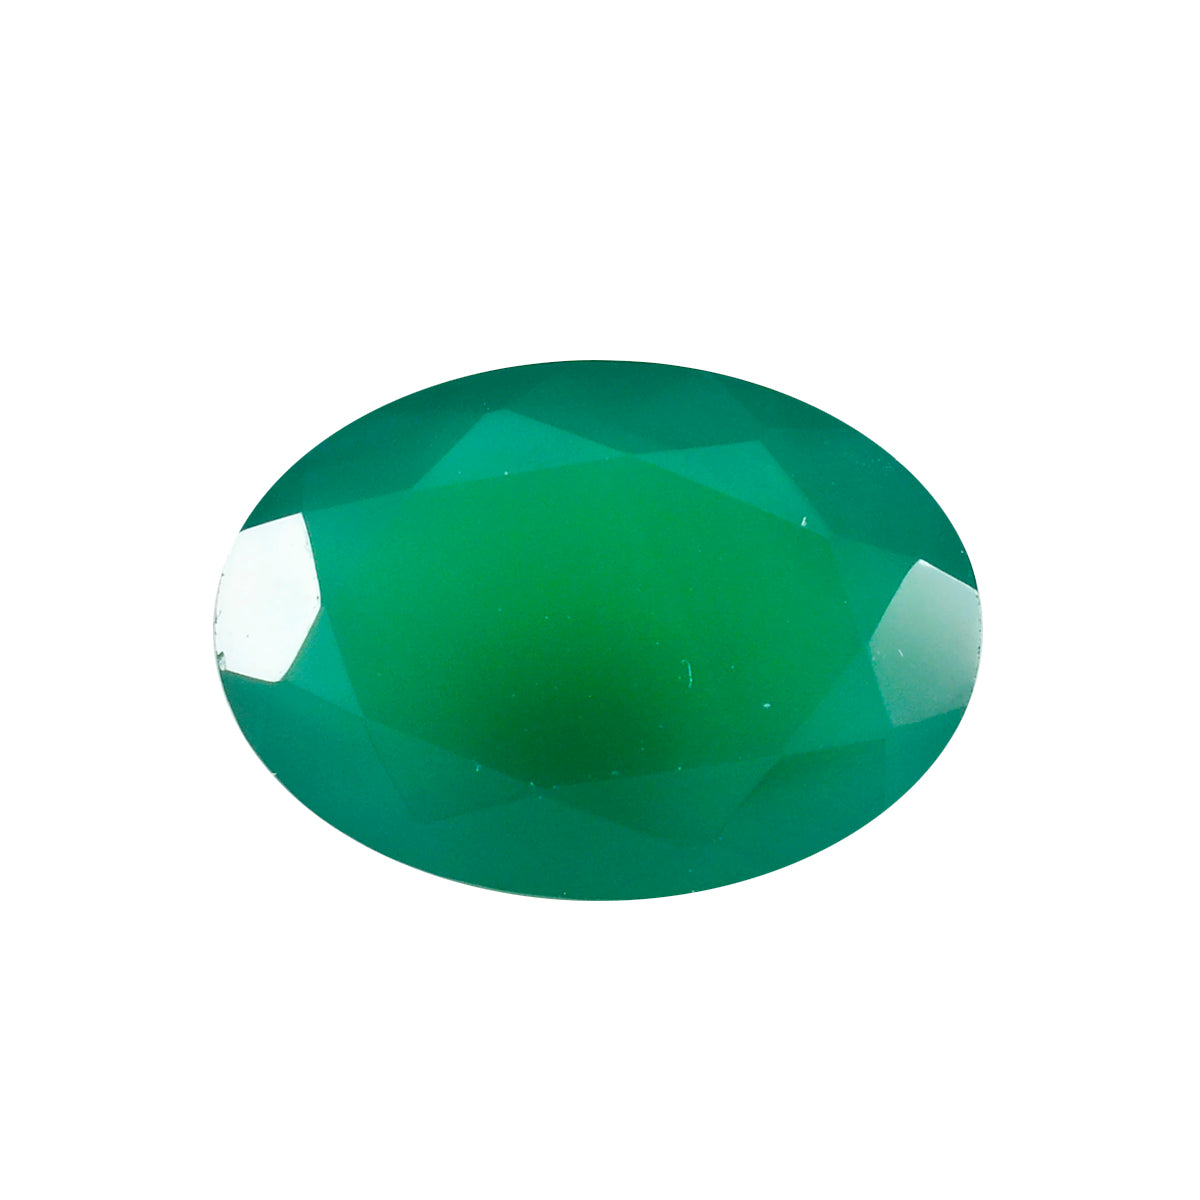 riyogems 1шт натуральный зеленый оникс ограненный 10x14 мм овальной формы прекрасного качества, свободный драгоценный камень